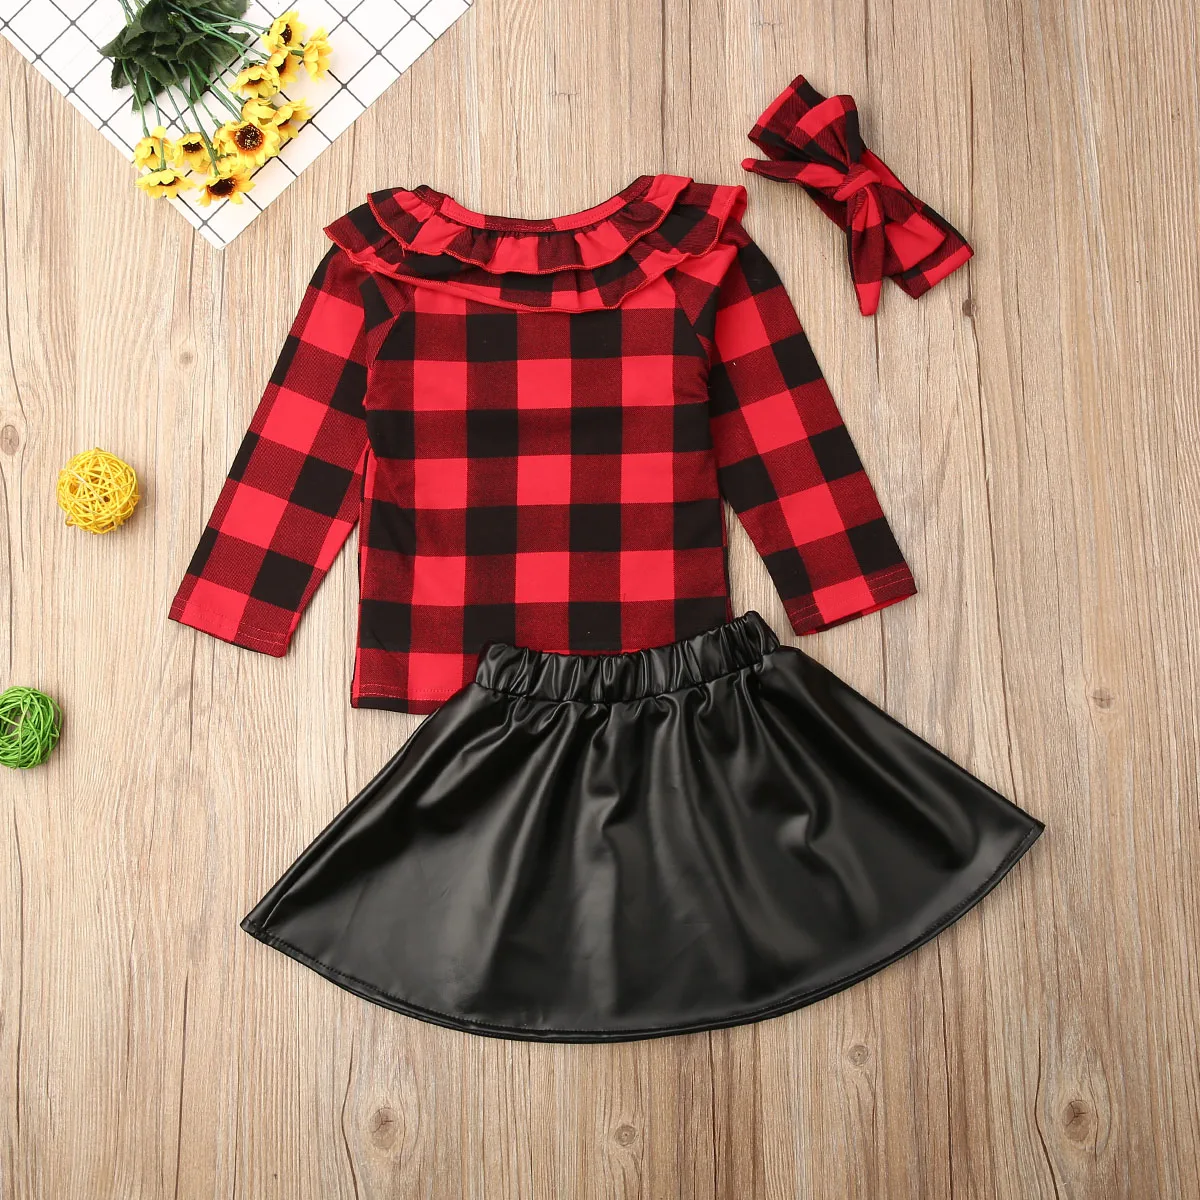 Дети детская одежда для малышки красного цвета в клетку футболка кожа черного цвета с длинным рукавом Кардиган с поясом осень комплект одежды для детей